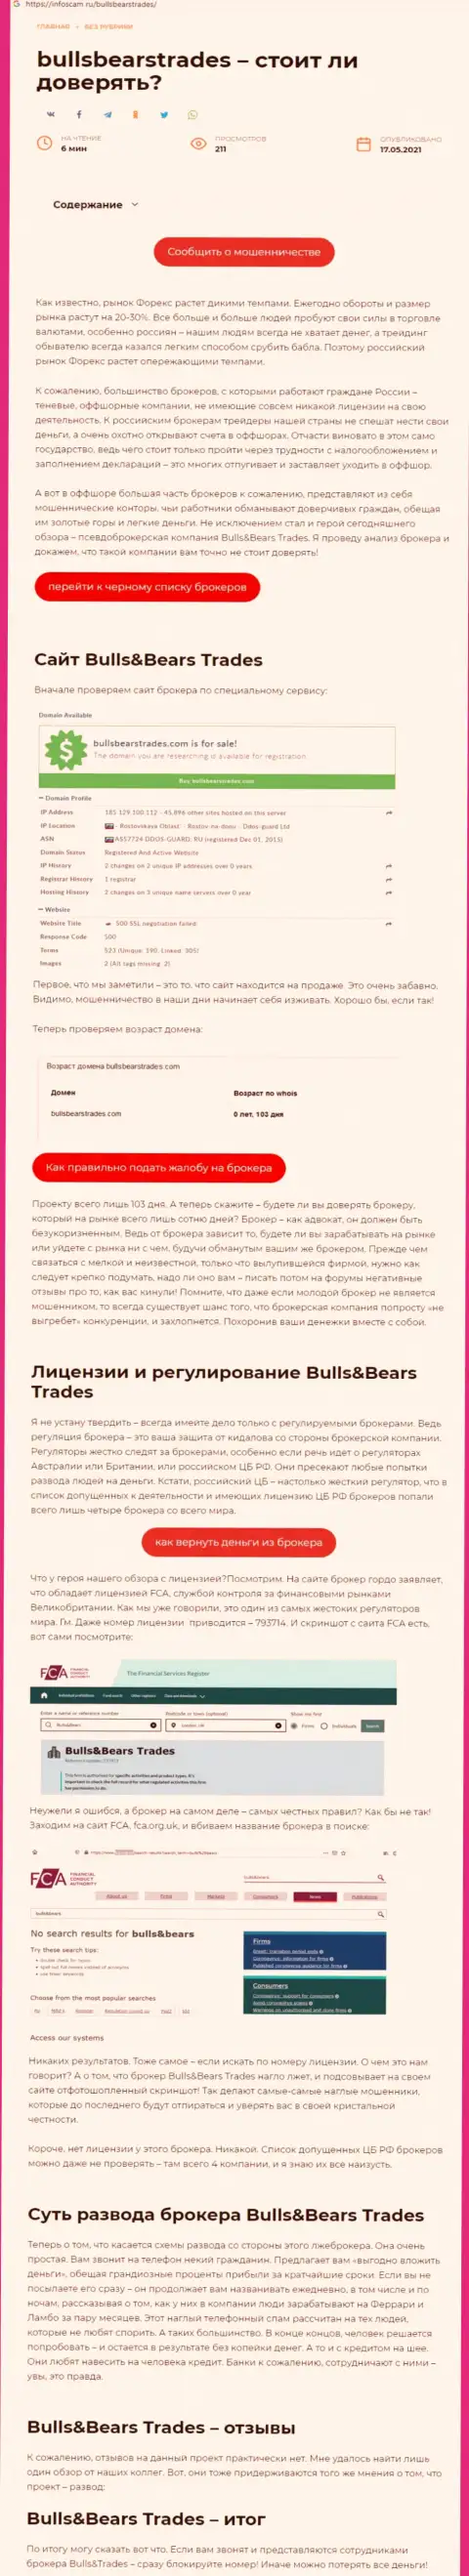 Bulls Bears Trades - это МОШЕННИК !!! Приемы грабежа (обзор)